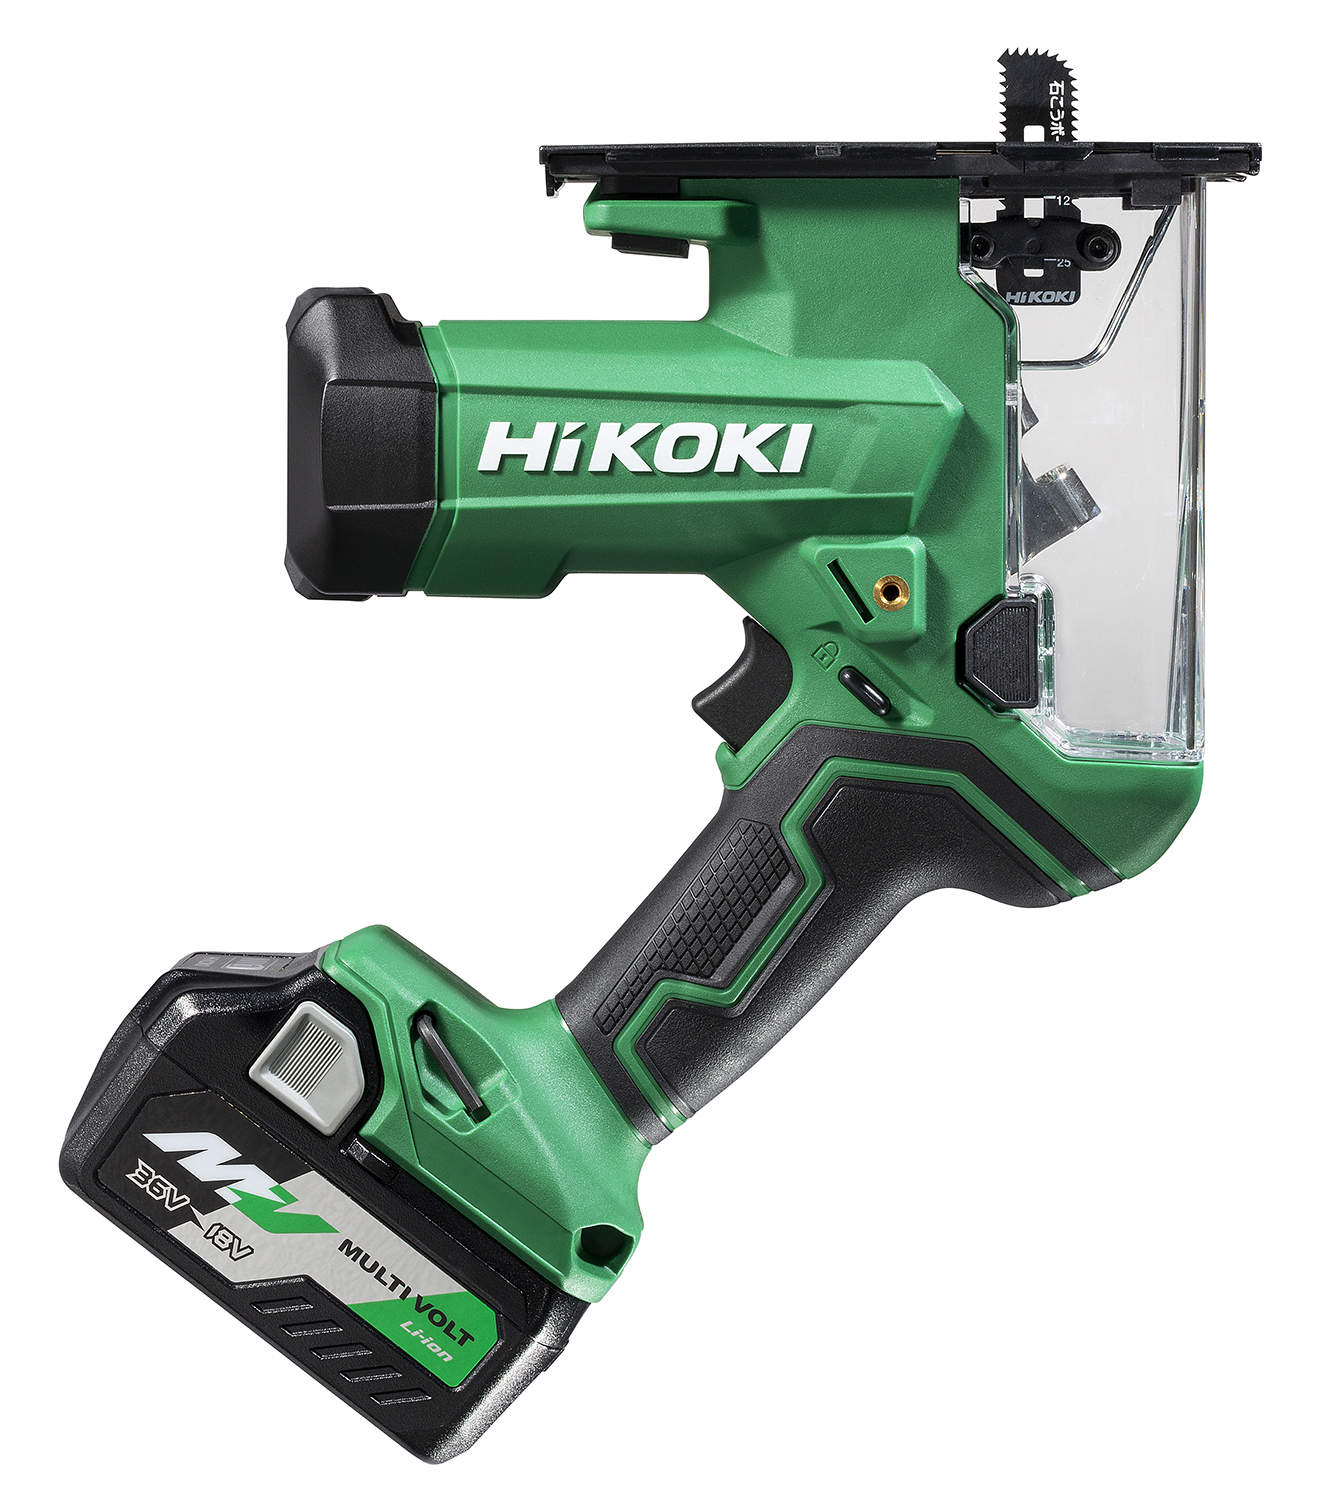 電動工具ブランド「HiKOKI(ハイコーキ)」上向きの天井開口をラクに 